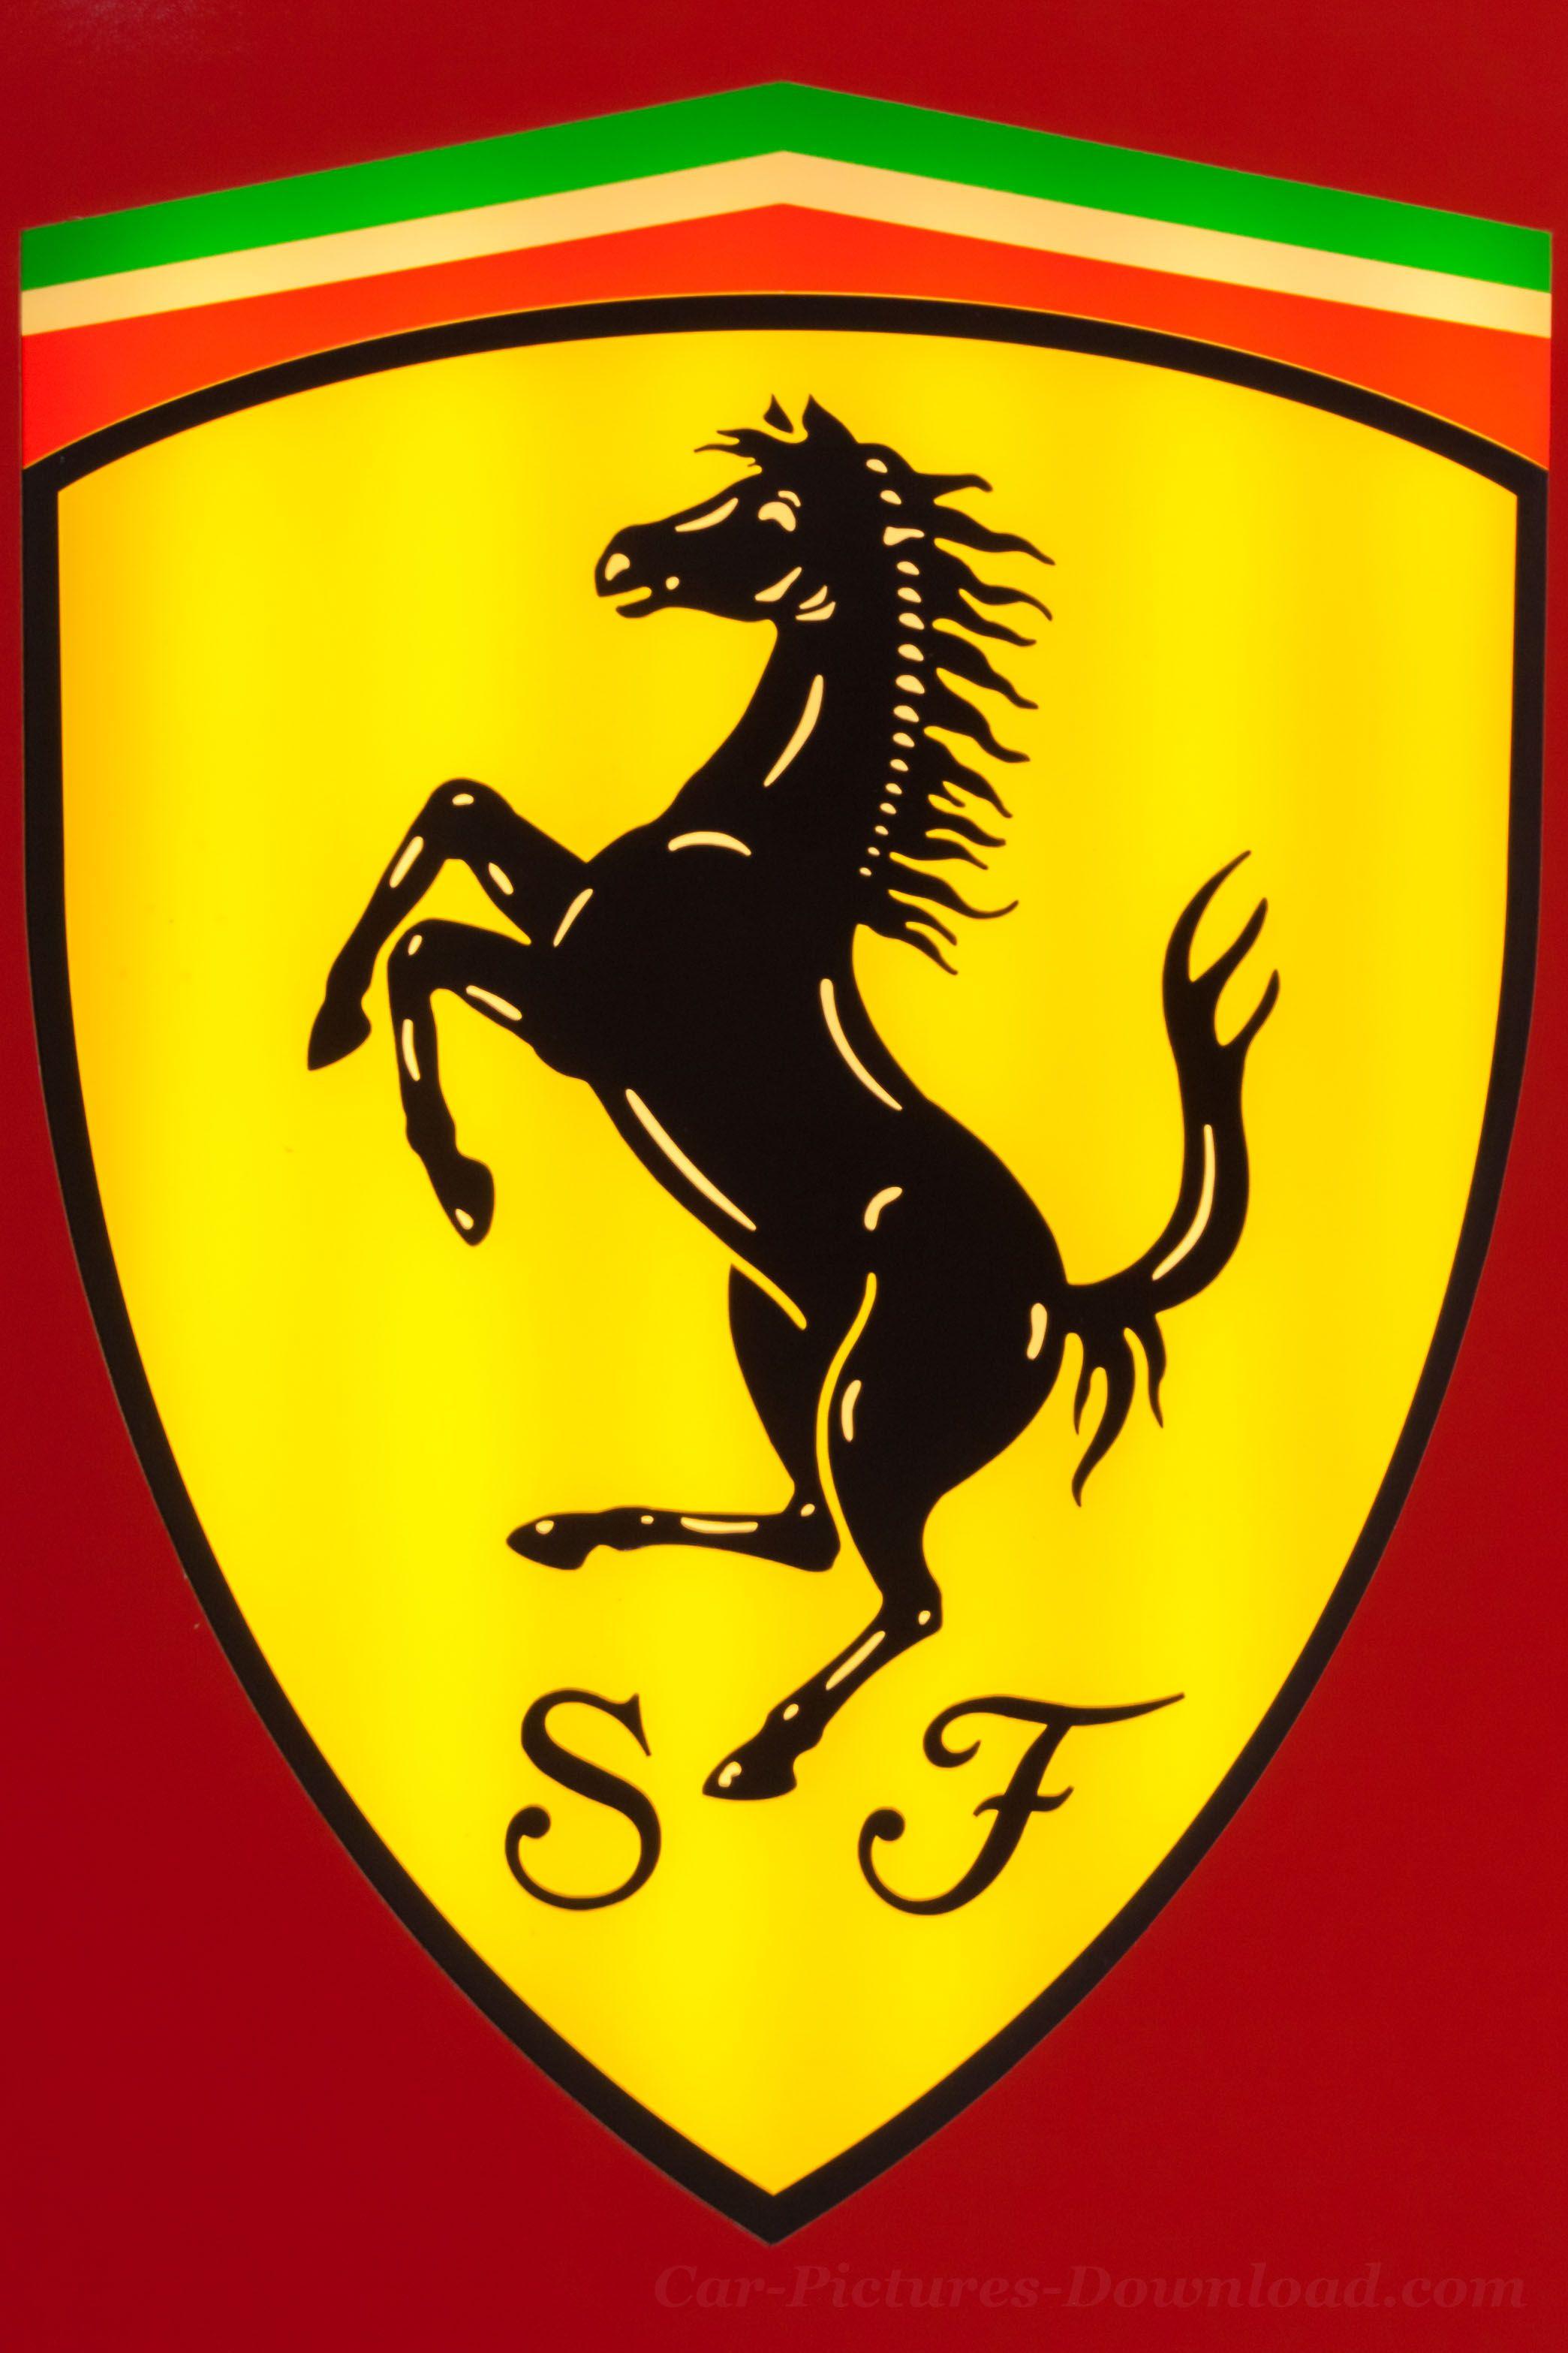 Ferrari Logo iPhone Wallpapers - Top Free Ferrari Logo iPhone ...